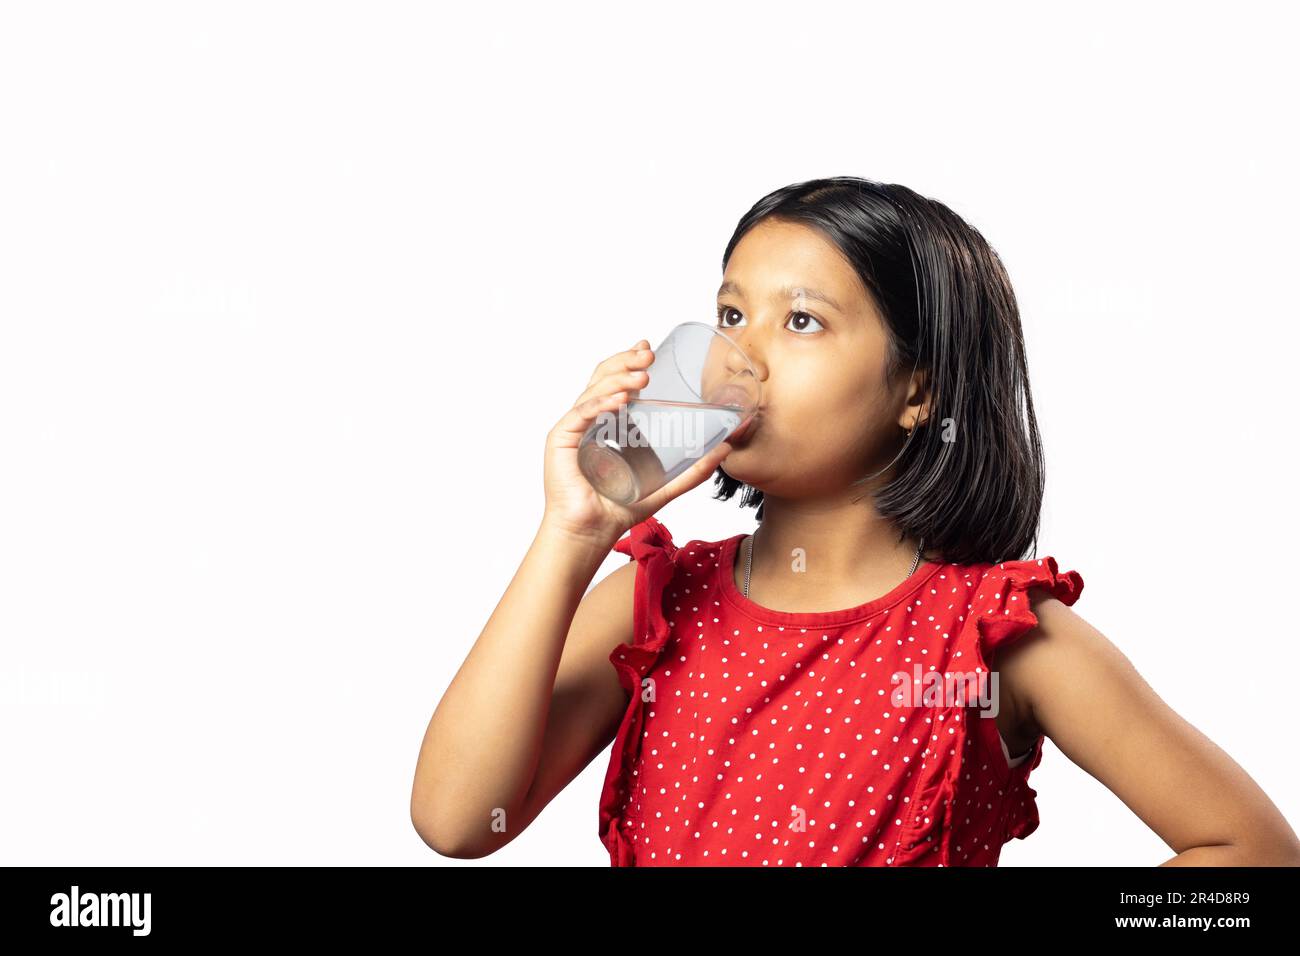 Une fille asiatique indienne en robe rouge boire de l'eau à partir d'un verre sur fond blanc Banque D'Images